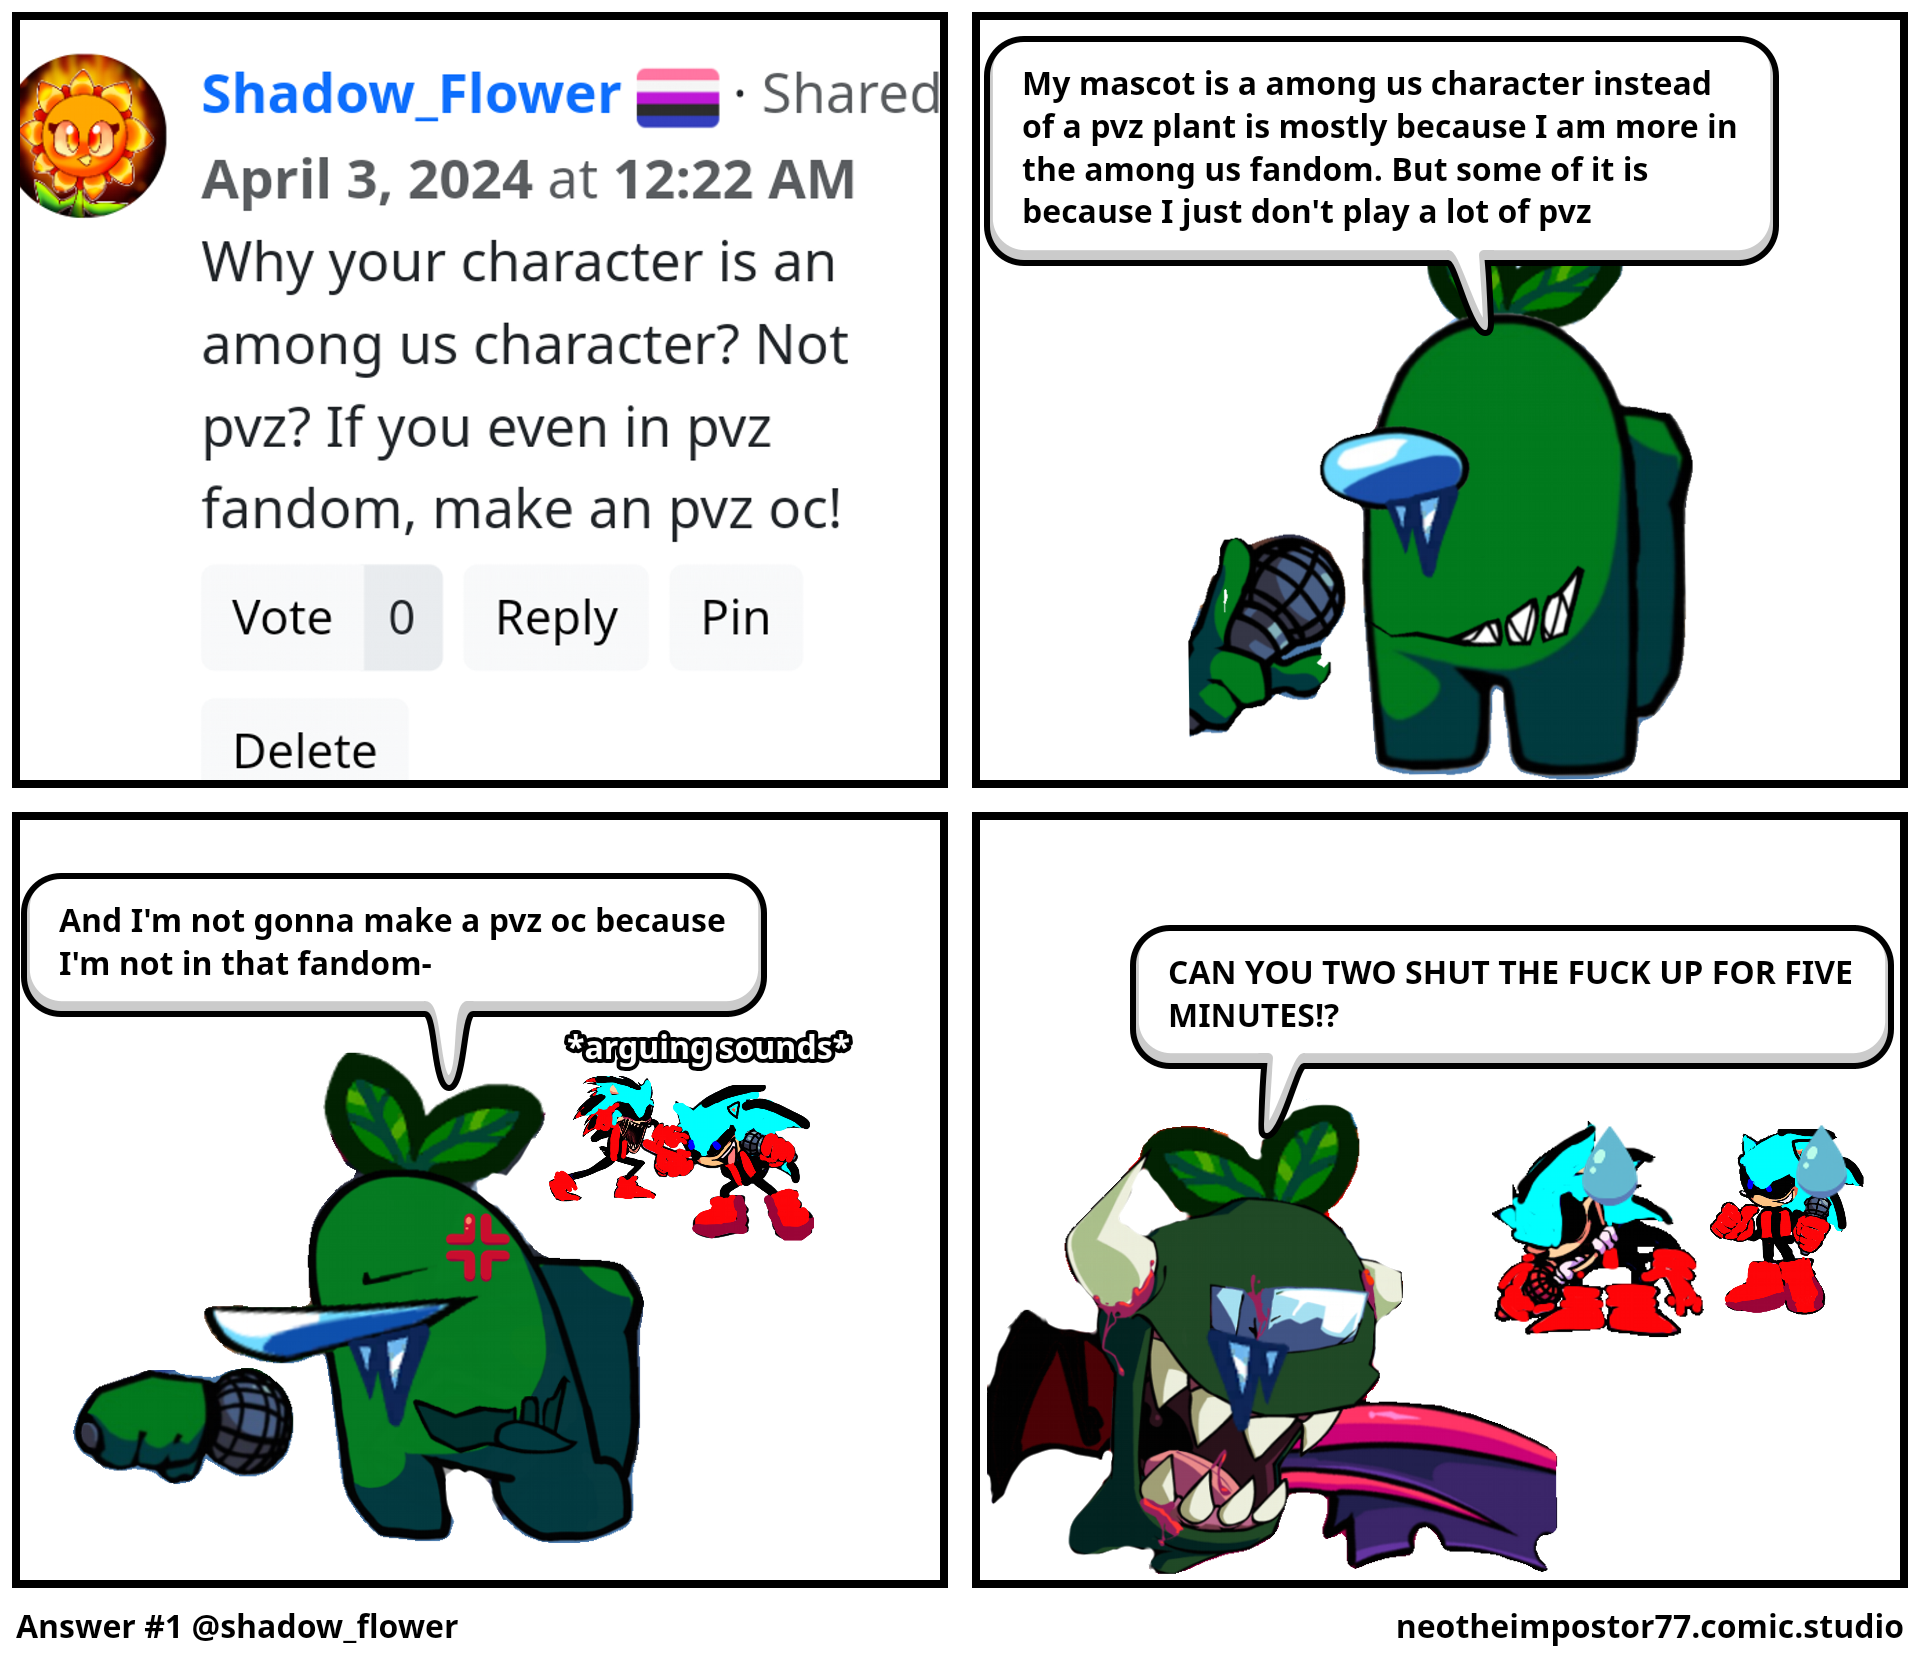 Answer #1 @shadow_flower